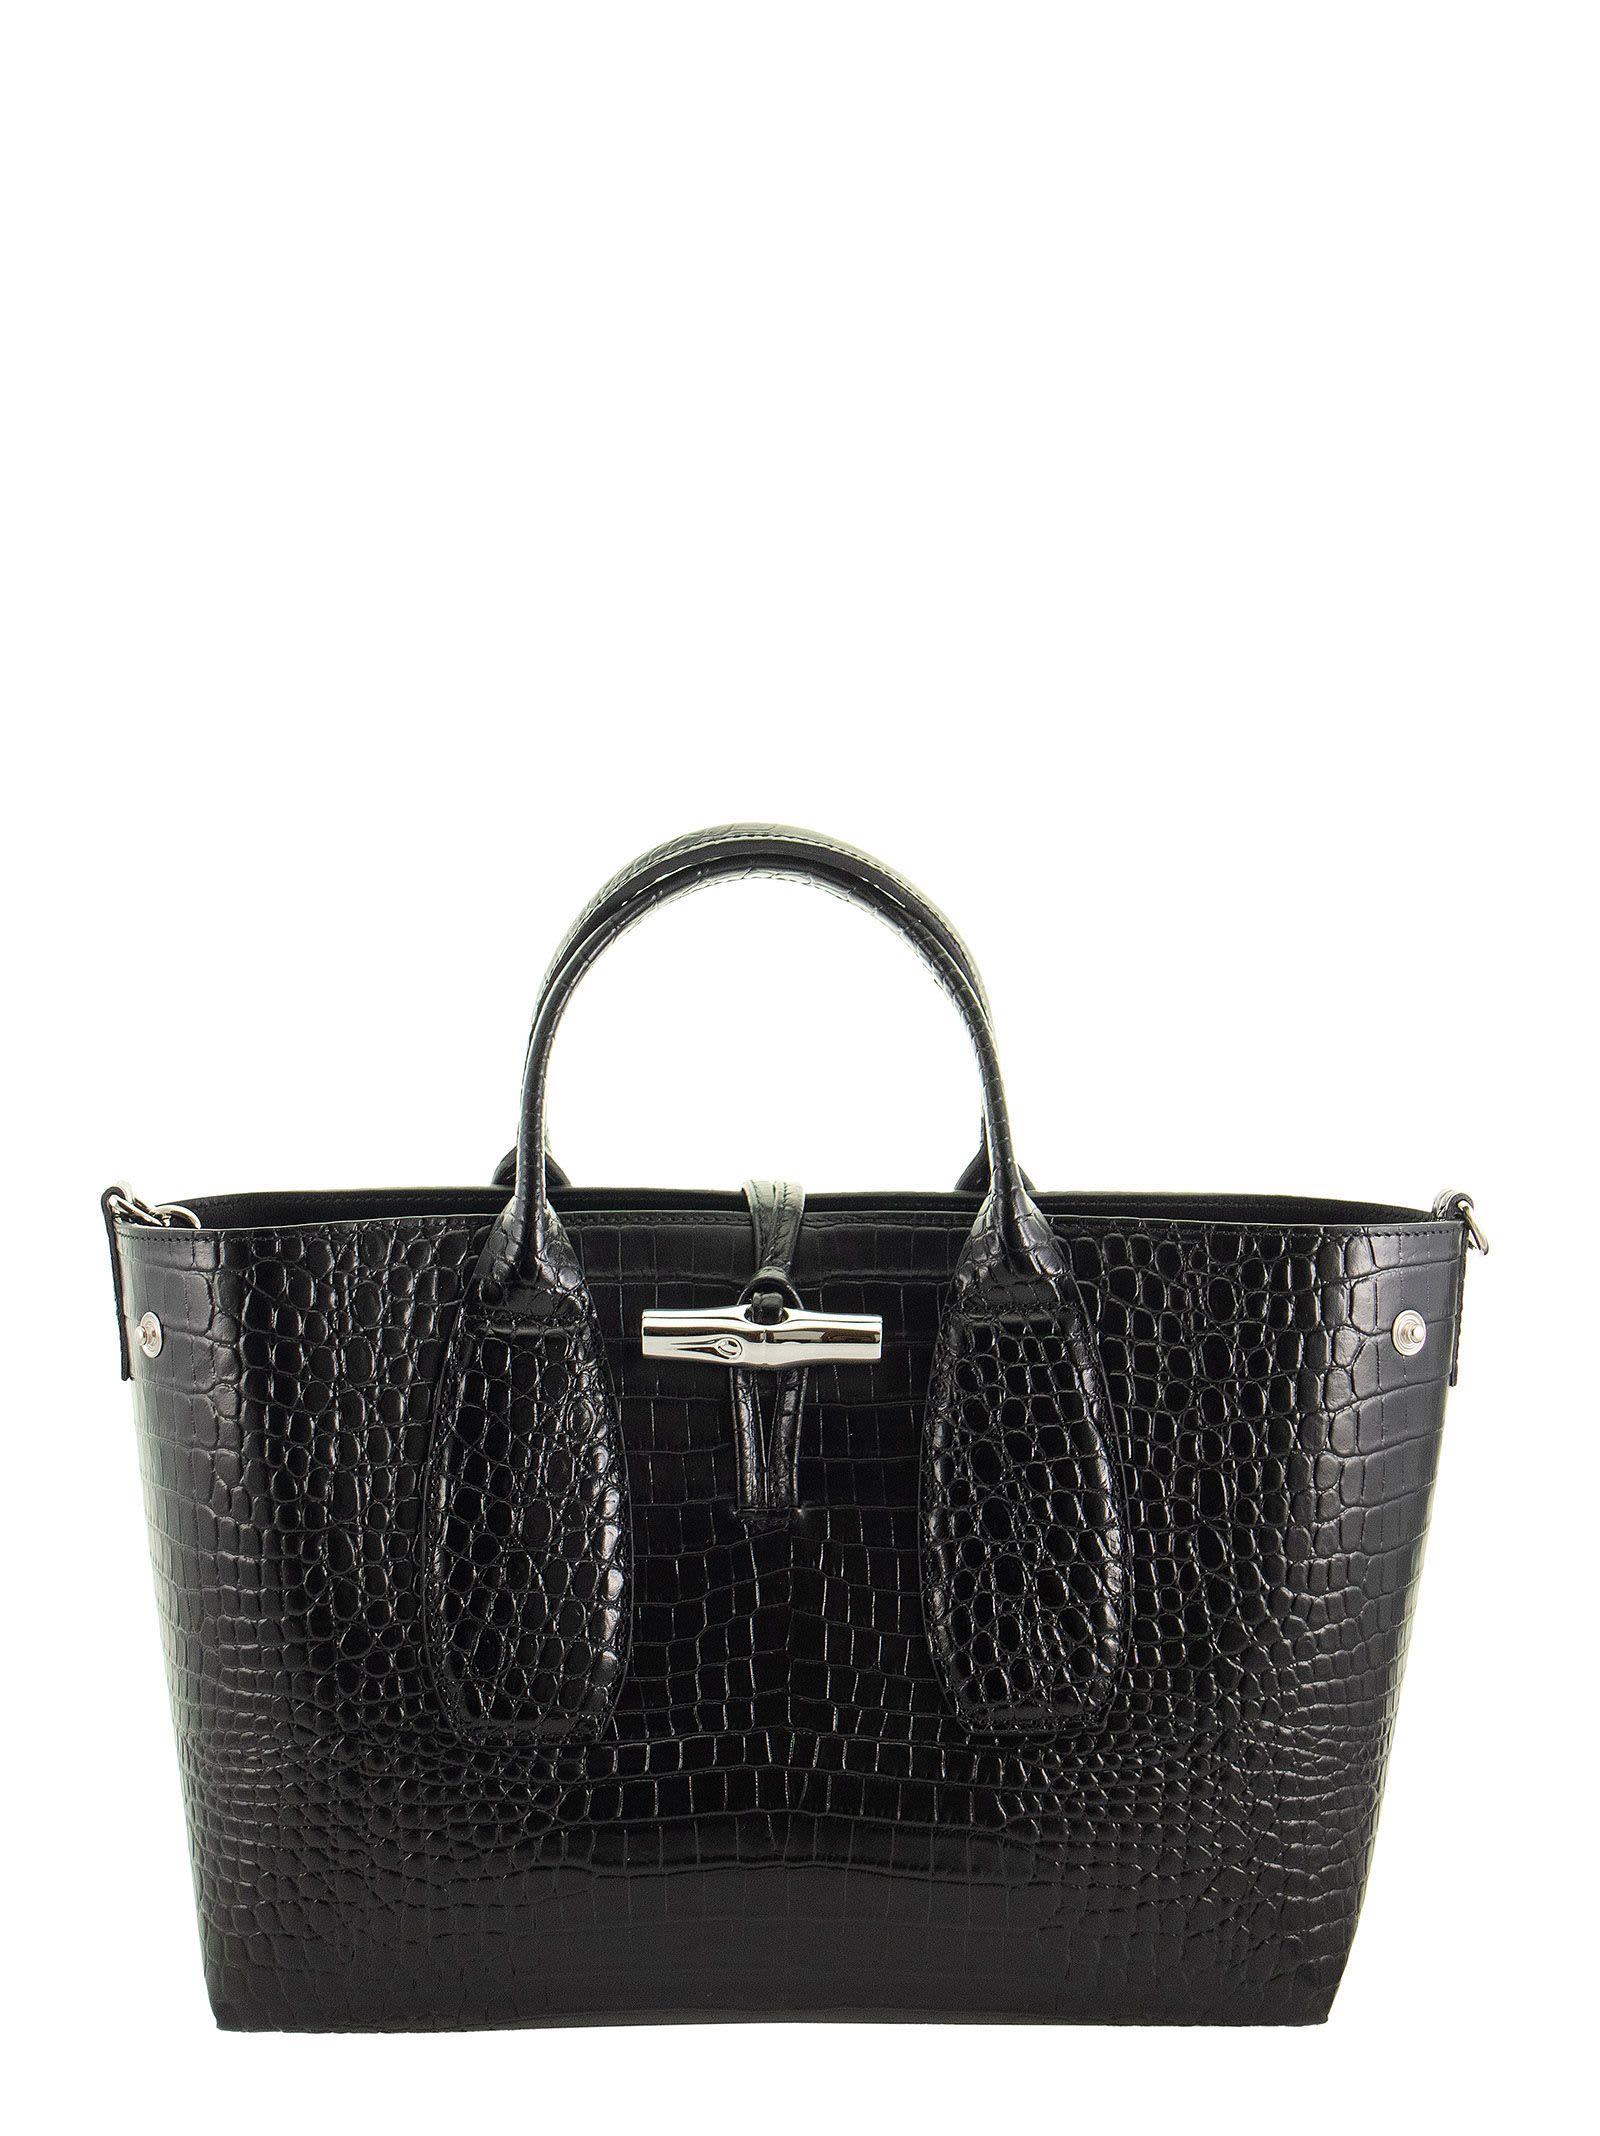 Longchamp Roseau - Top Handle Bag M